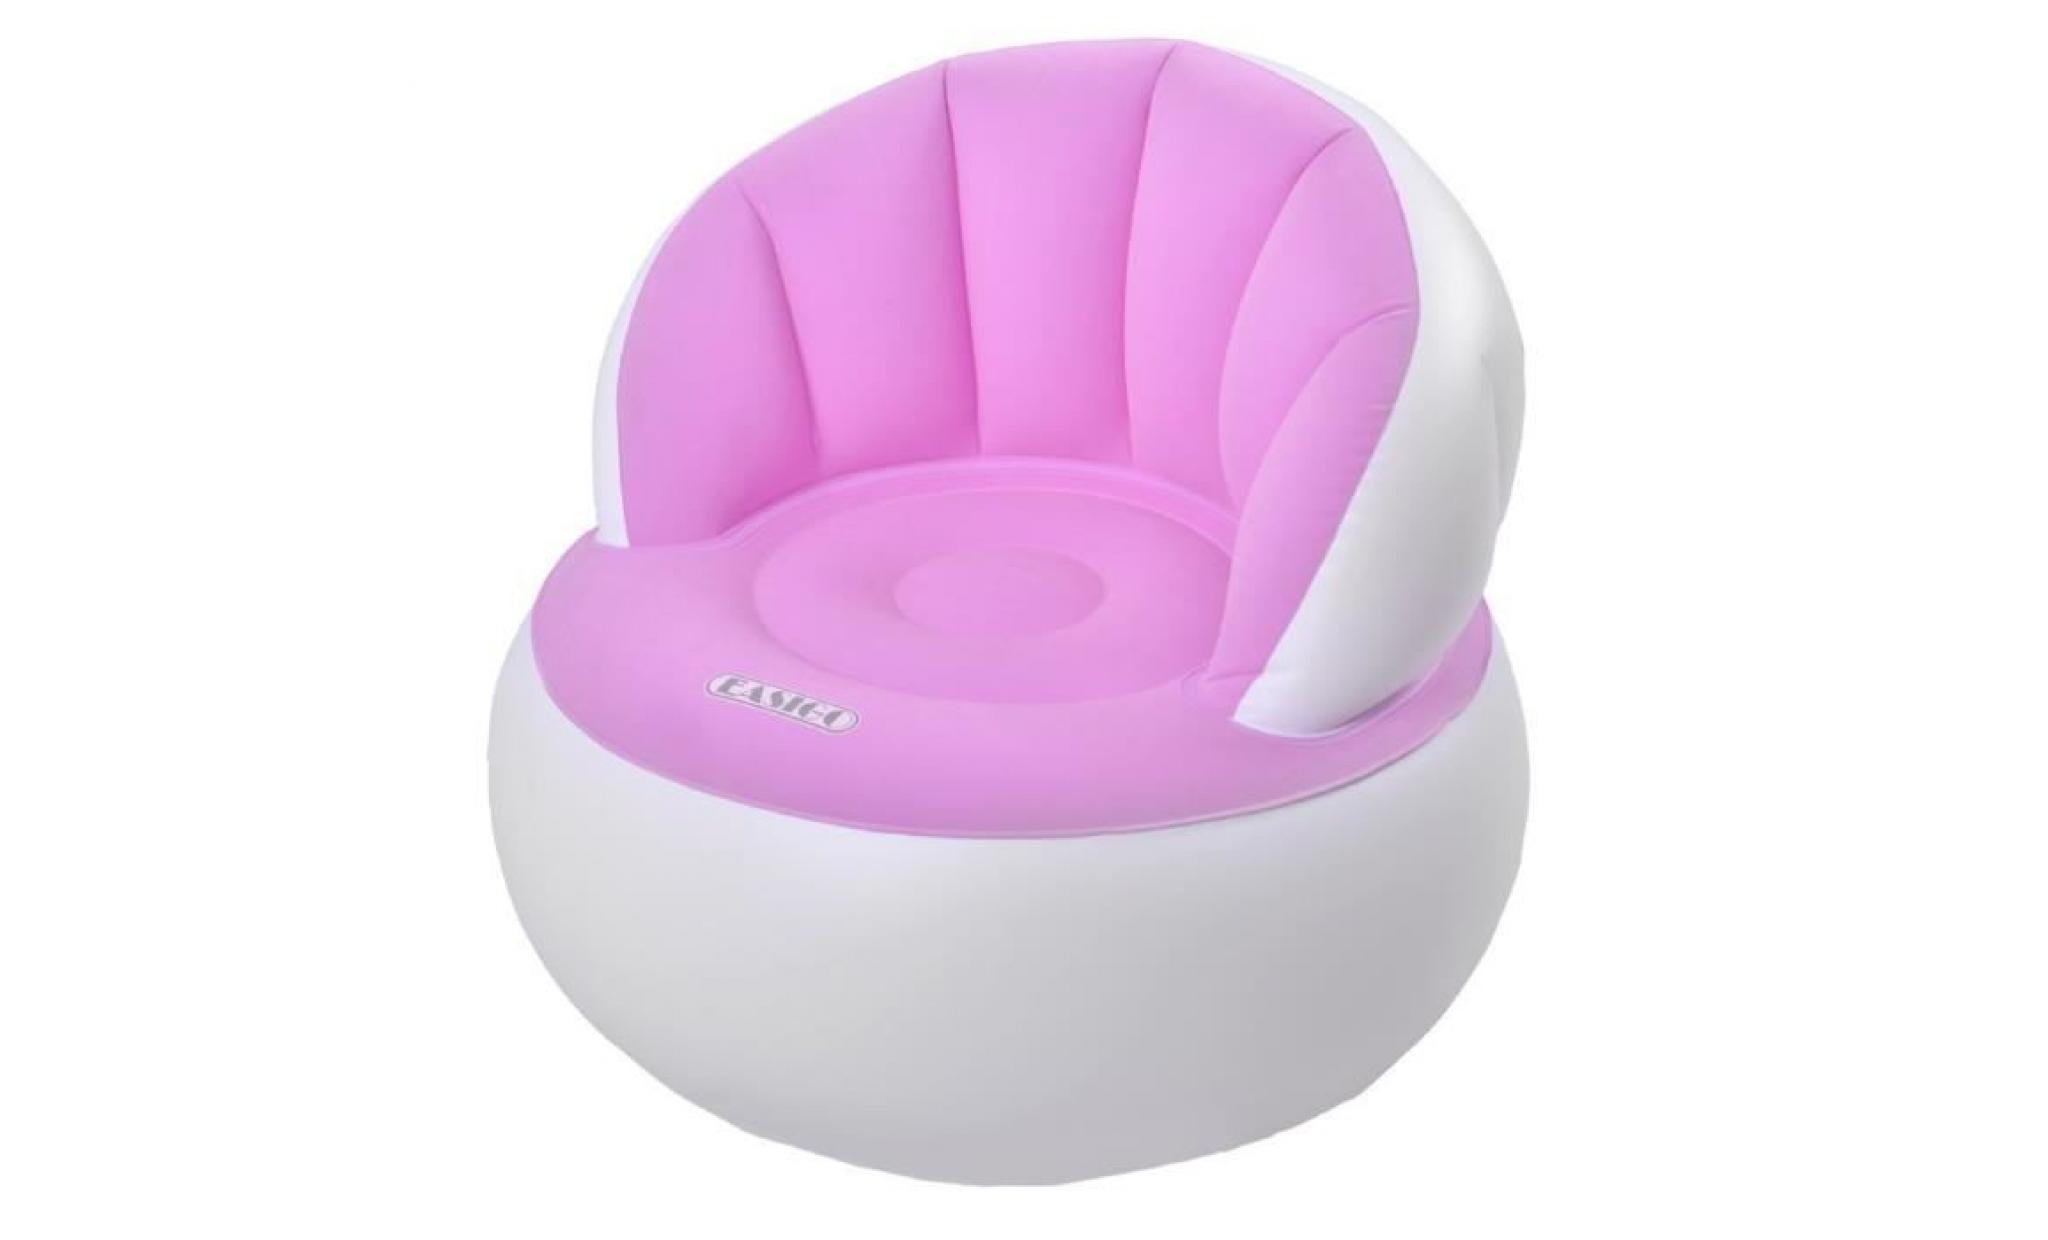 fauteuil design avec lumbar support pour gonflable, 3 couleurs assorties pas cher